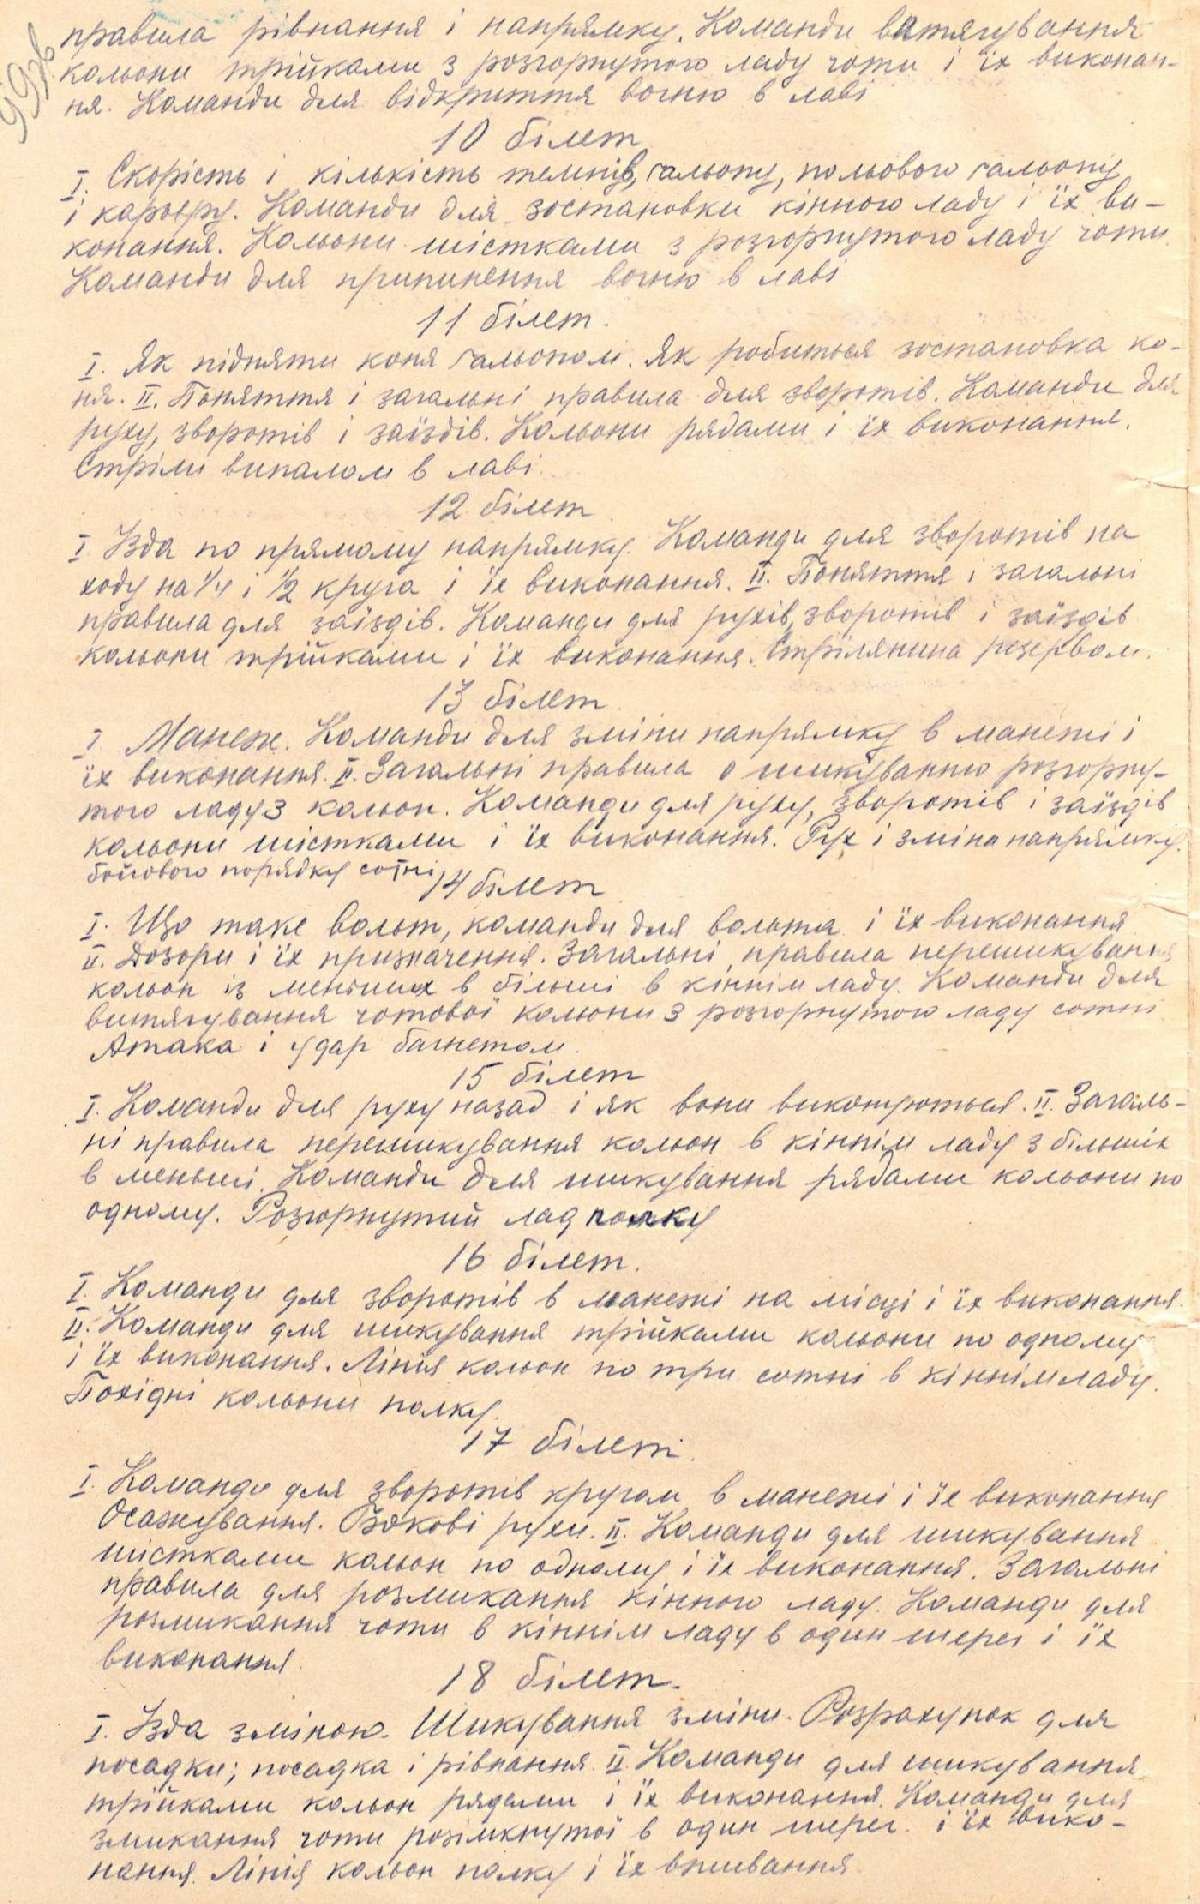 Програма муштрового статуту кінного відділу Спільної юнацької школи. [1921-1922 рр.]